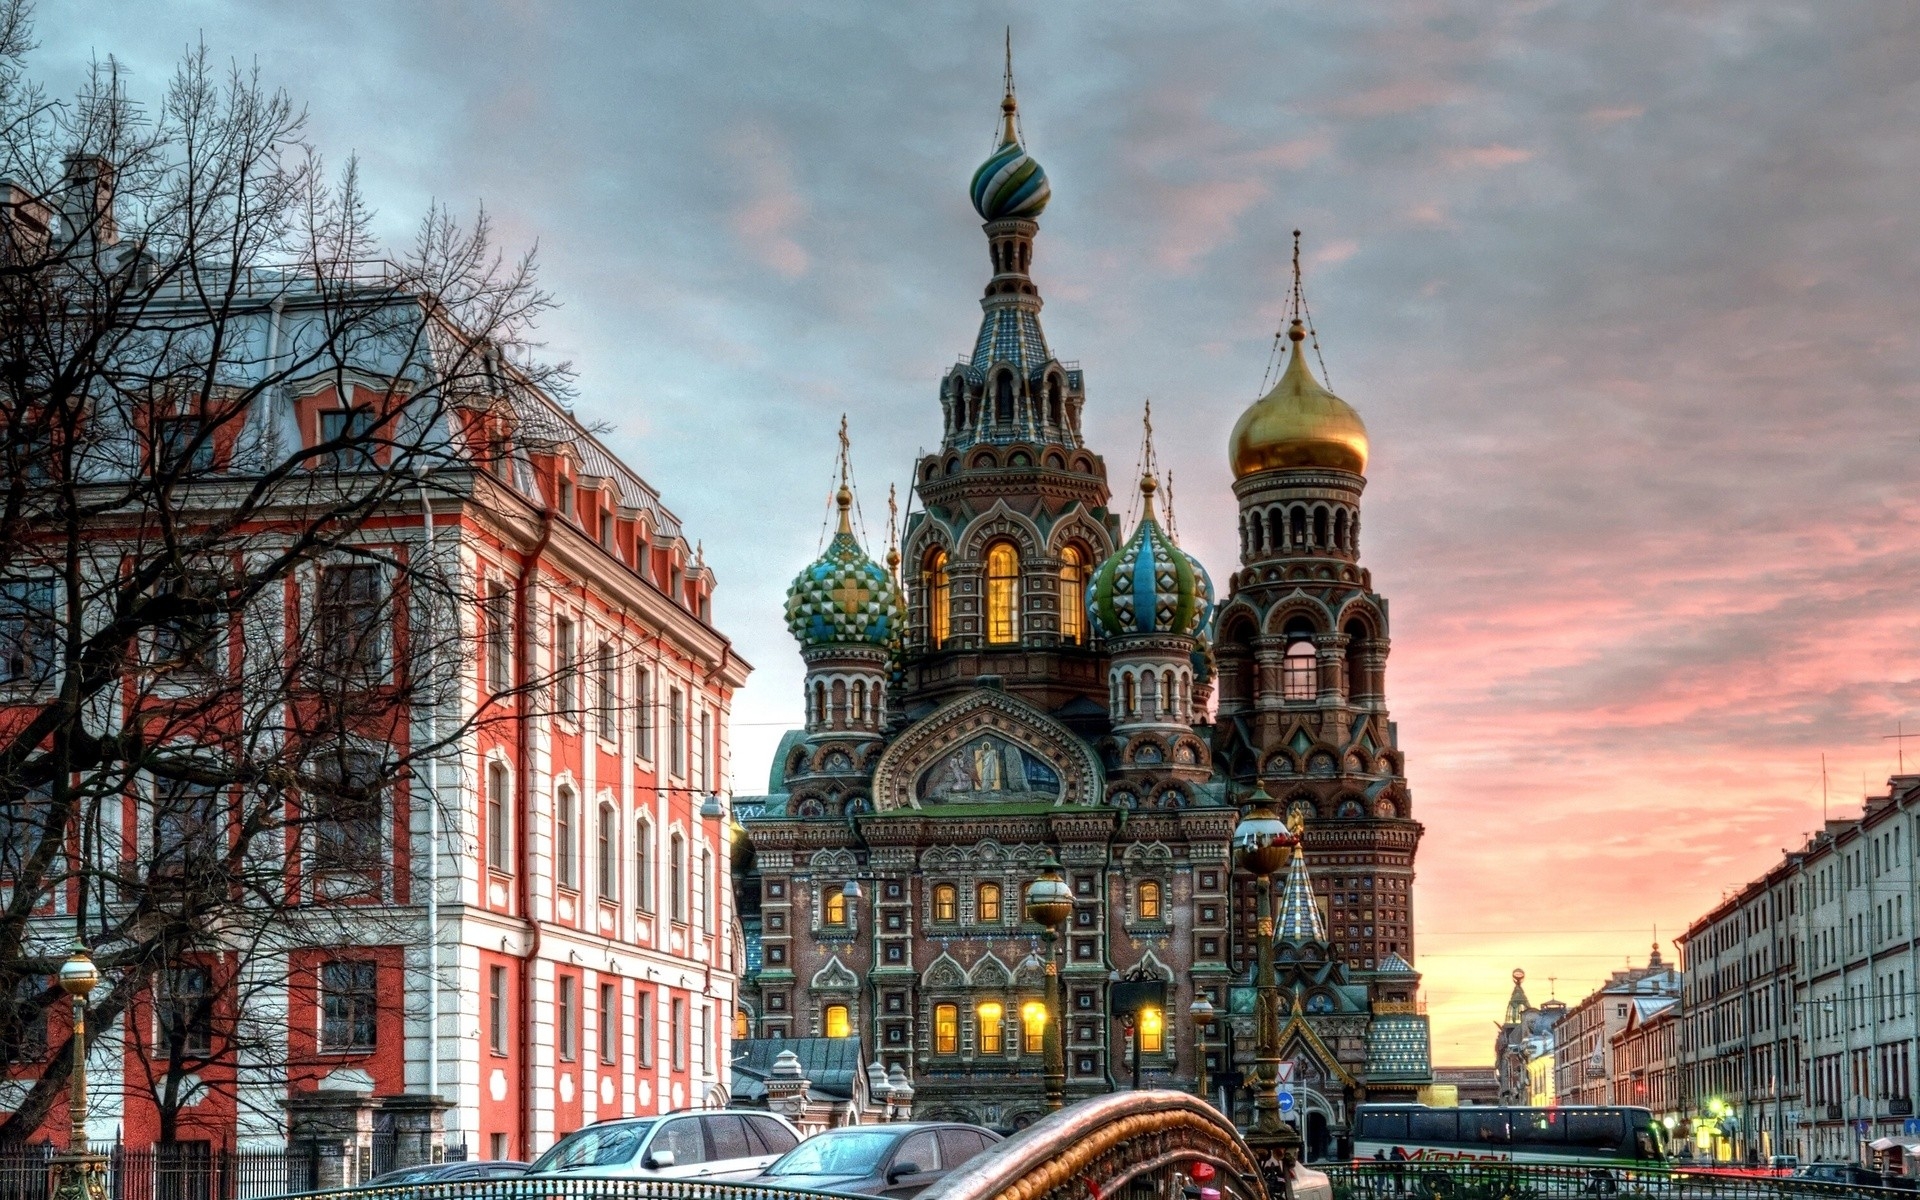 Картинки Санкт-Петербург, Петергоф, улица, достопримечательности, hdr фото и обои на рабочий стол